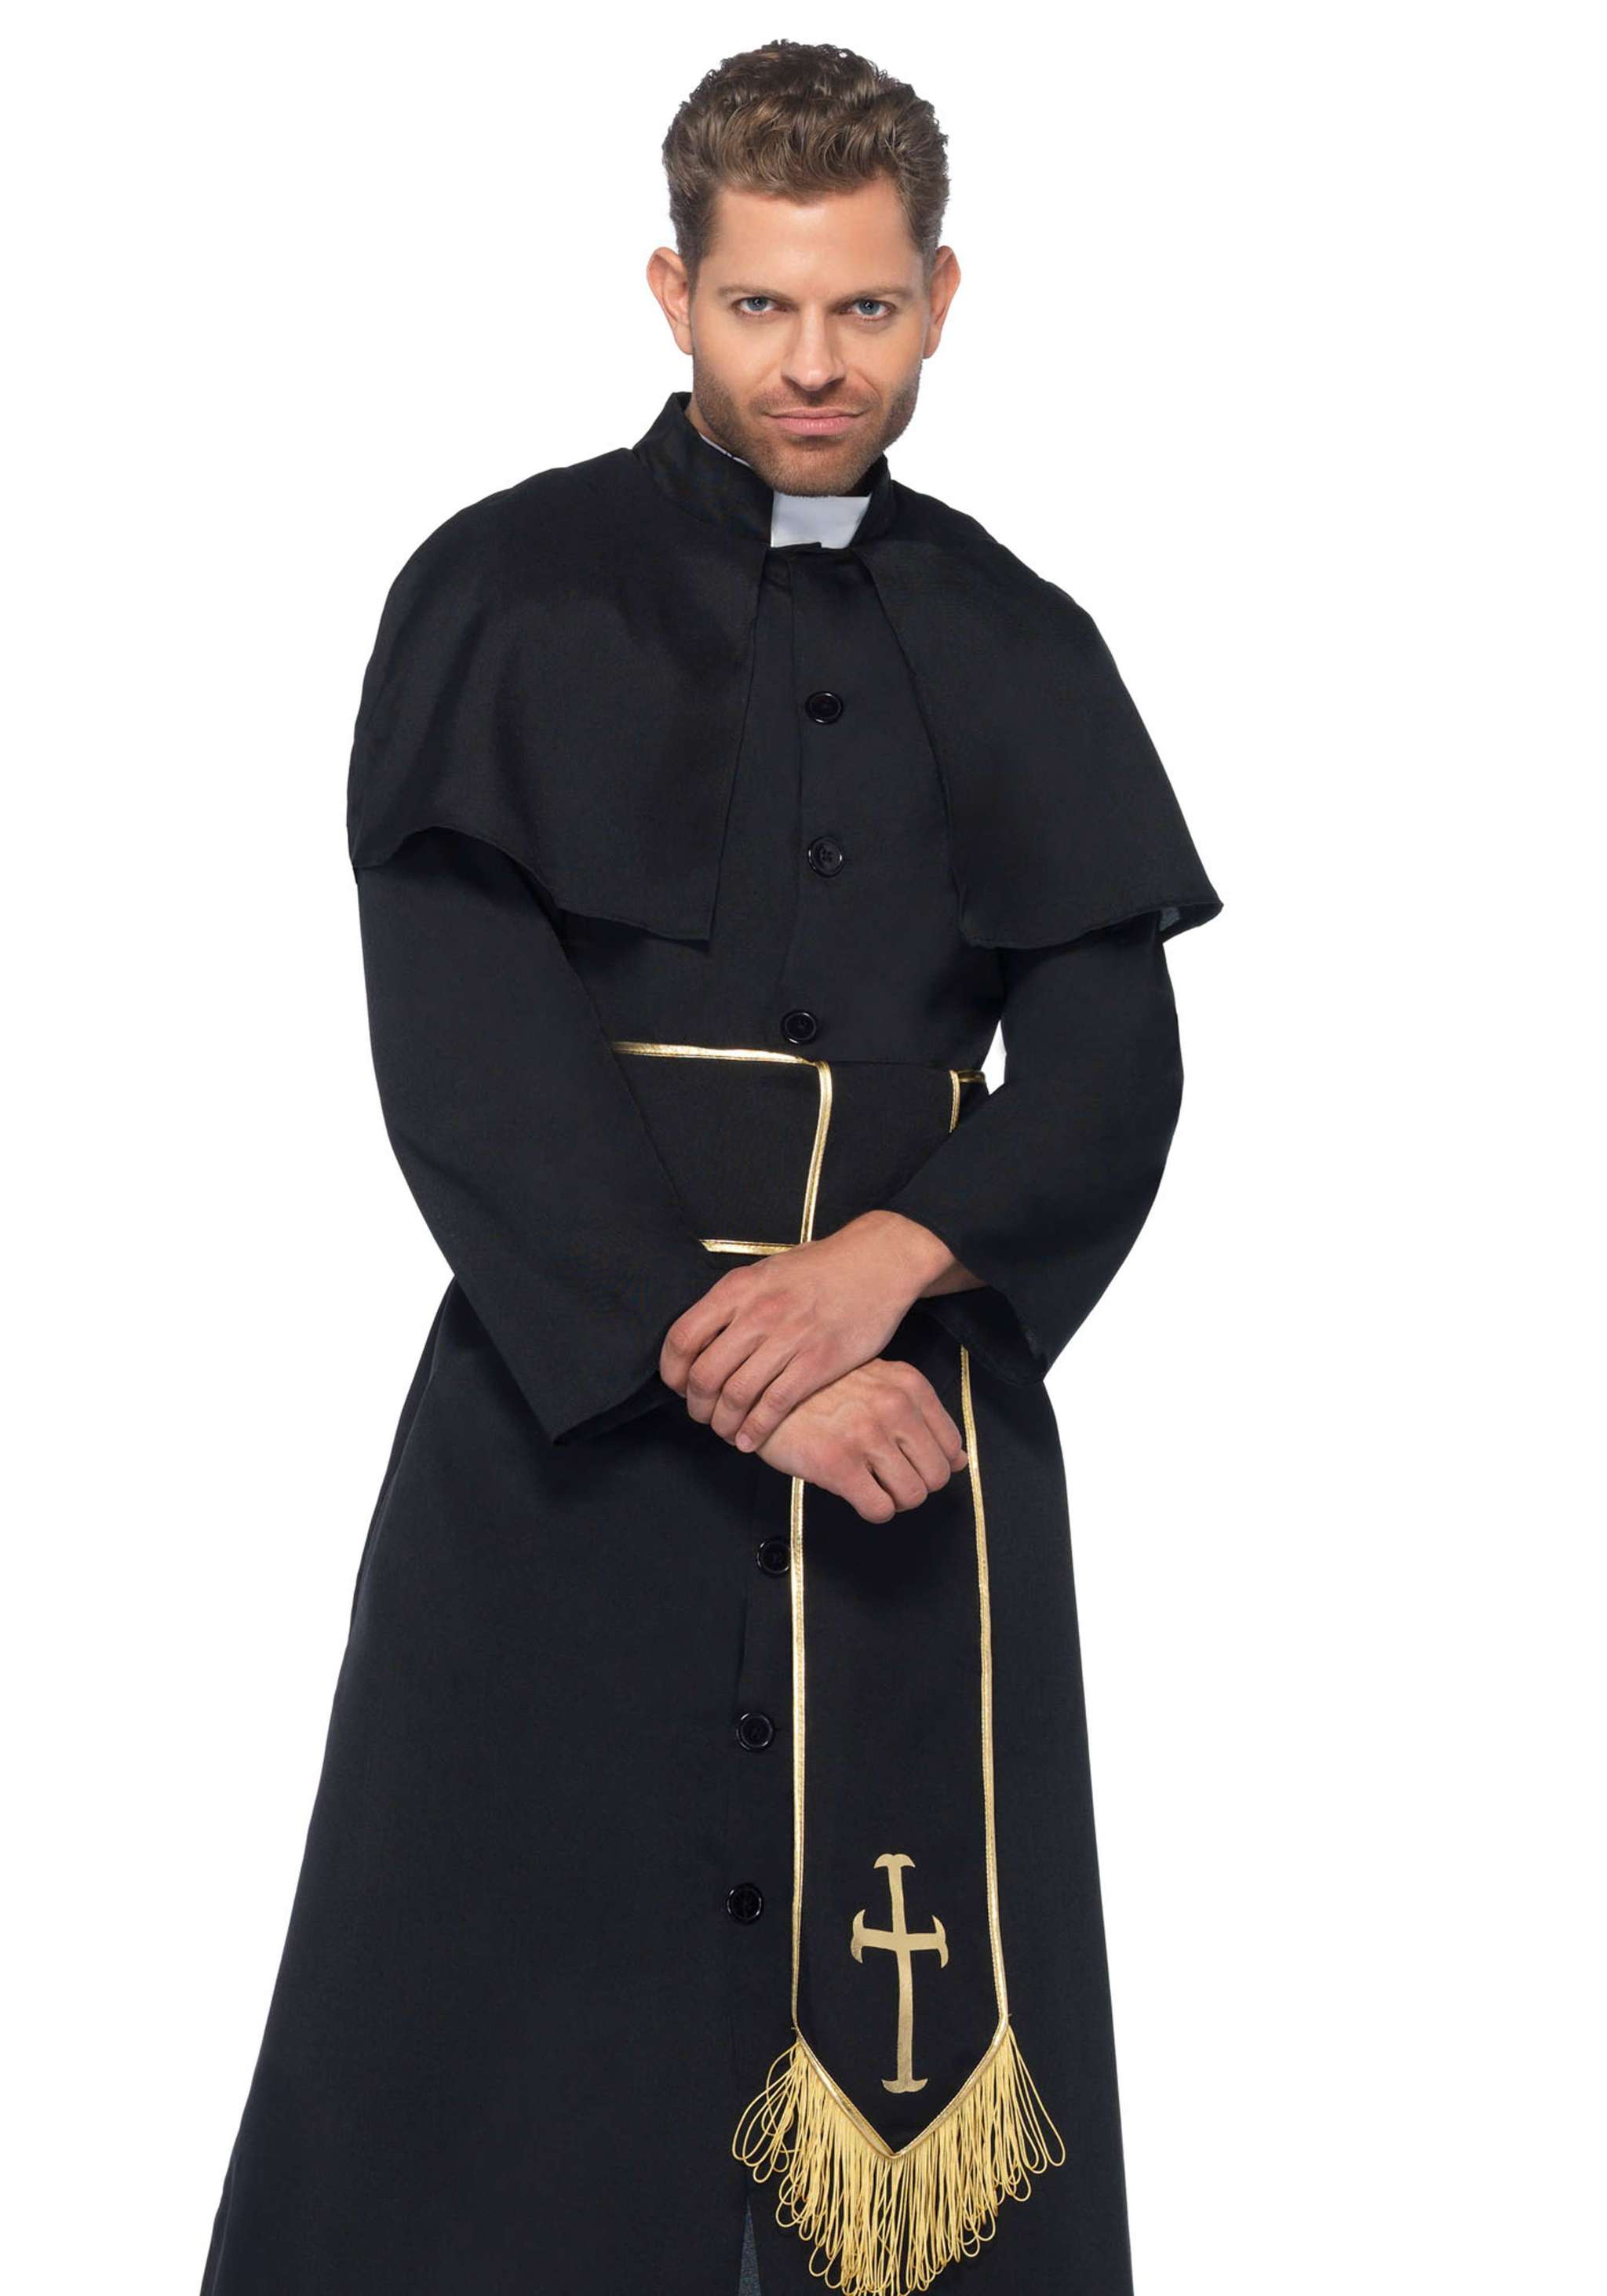 Pri est. Священник (Priest, Великобритания, 1994). Капеллан священник католический. Сутана католического священника. Католический священник Падре.